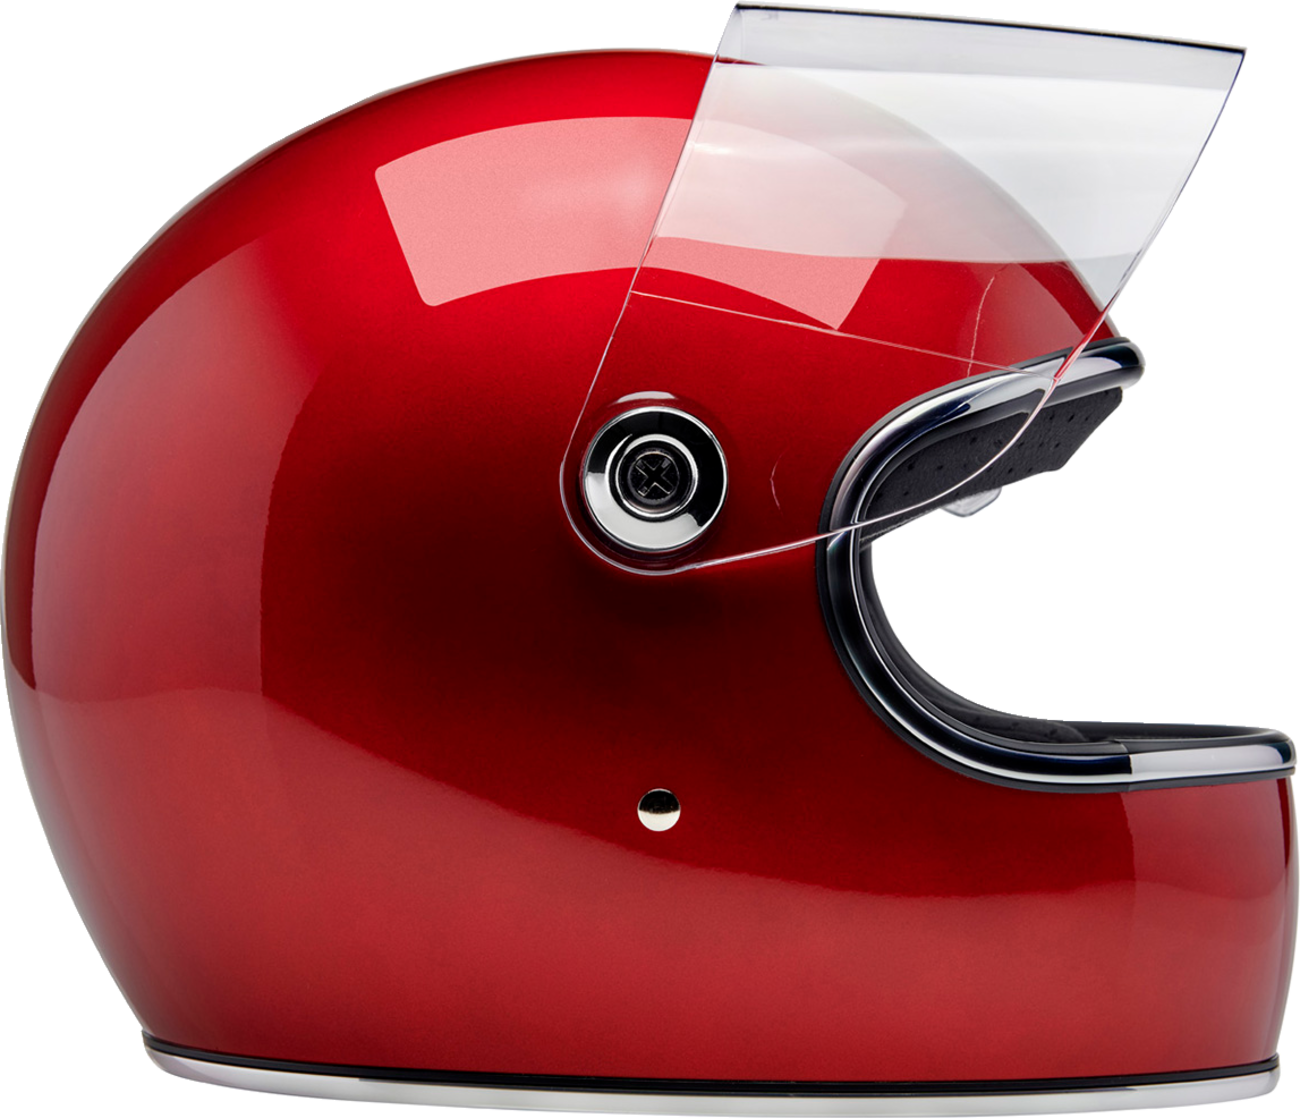 BILTWELL Gringo S Helmet - Metallic Cherry Red - Large 1003-351-504